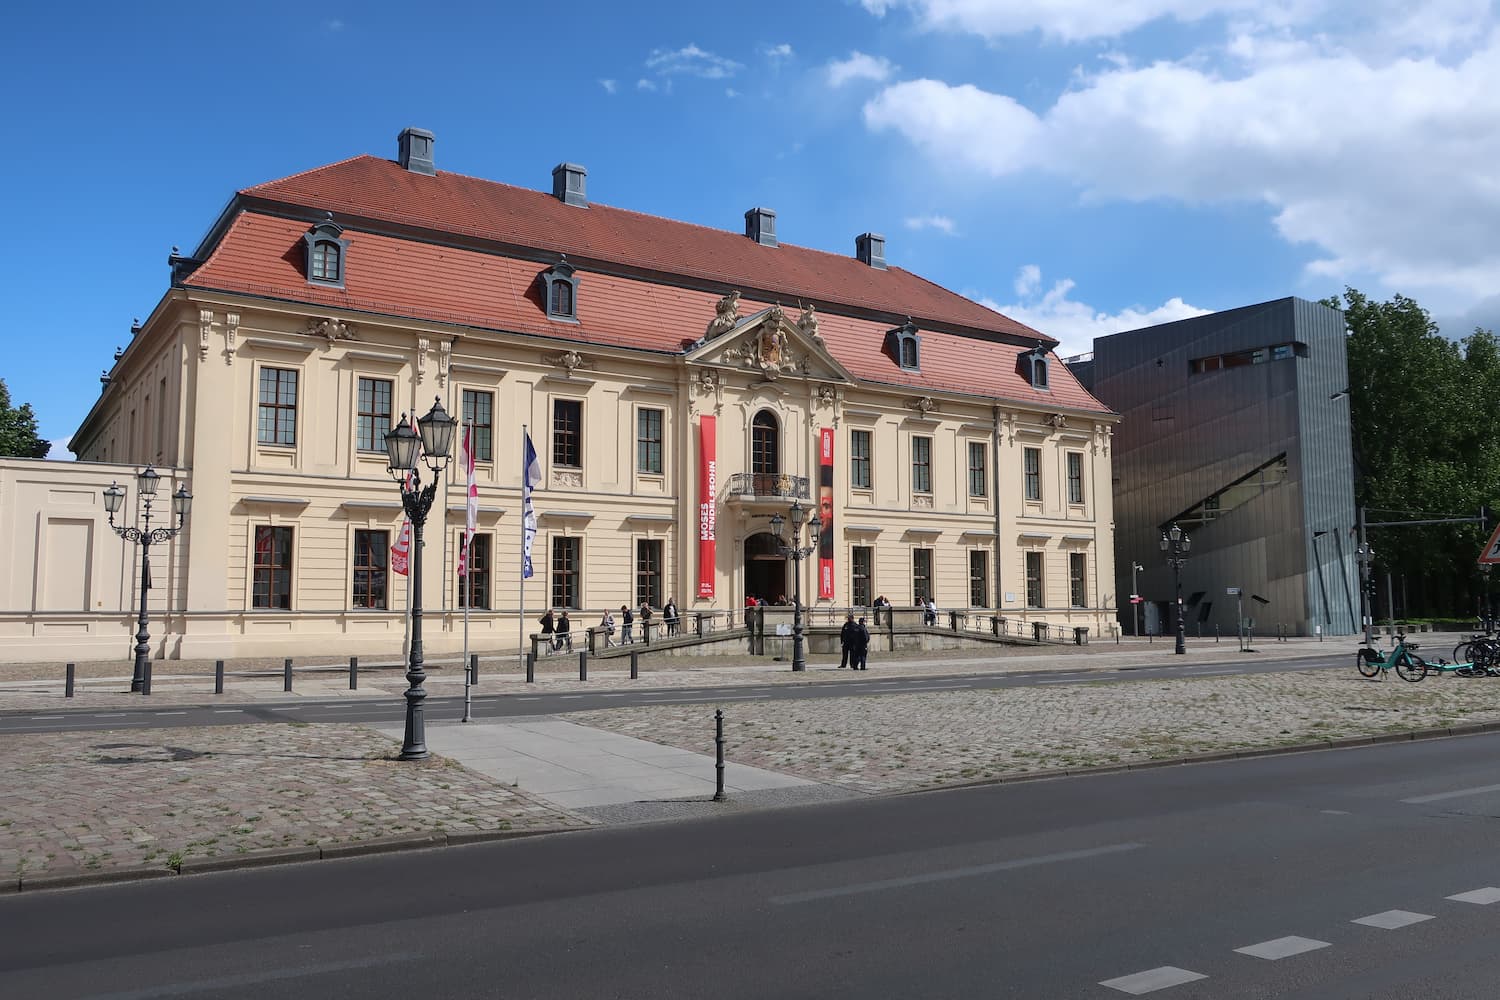 ユダヤ人迫害の苦しみを実感できる場所 「ベルリン・ユダヤ博物館」